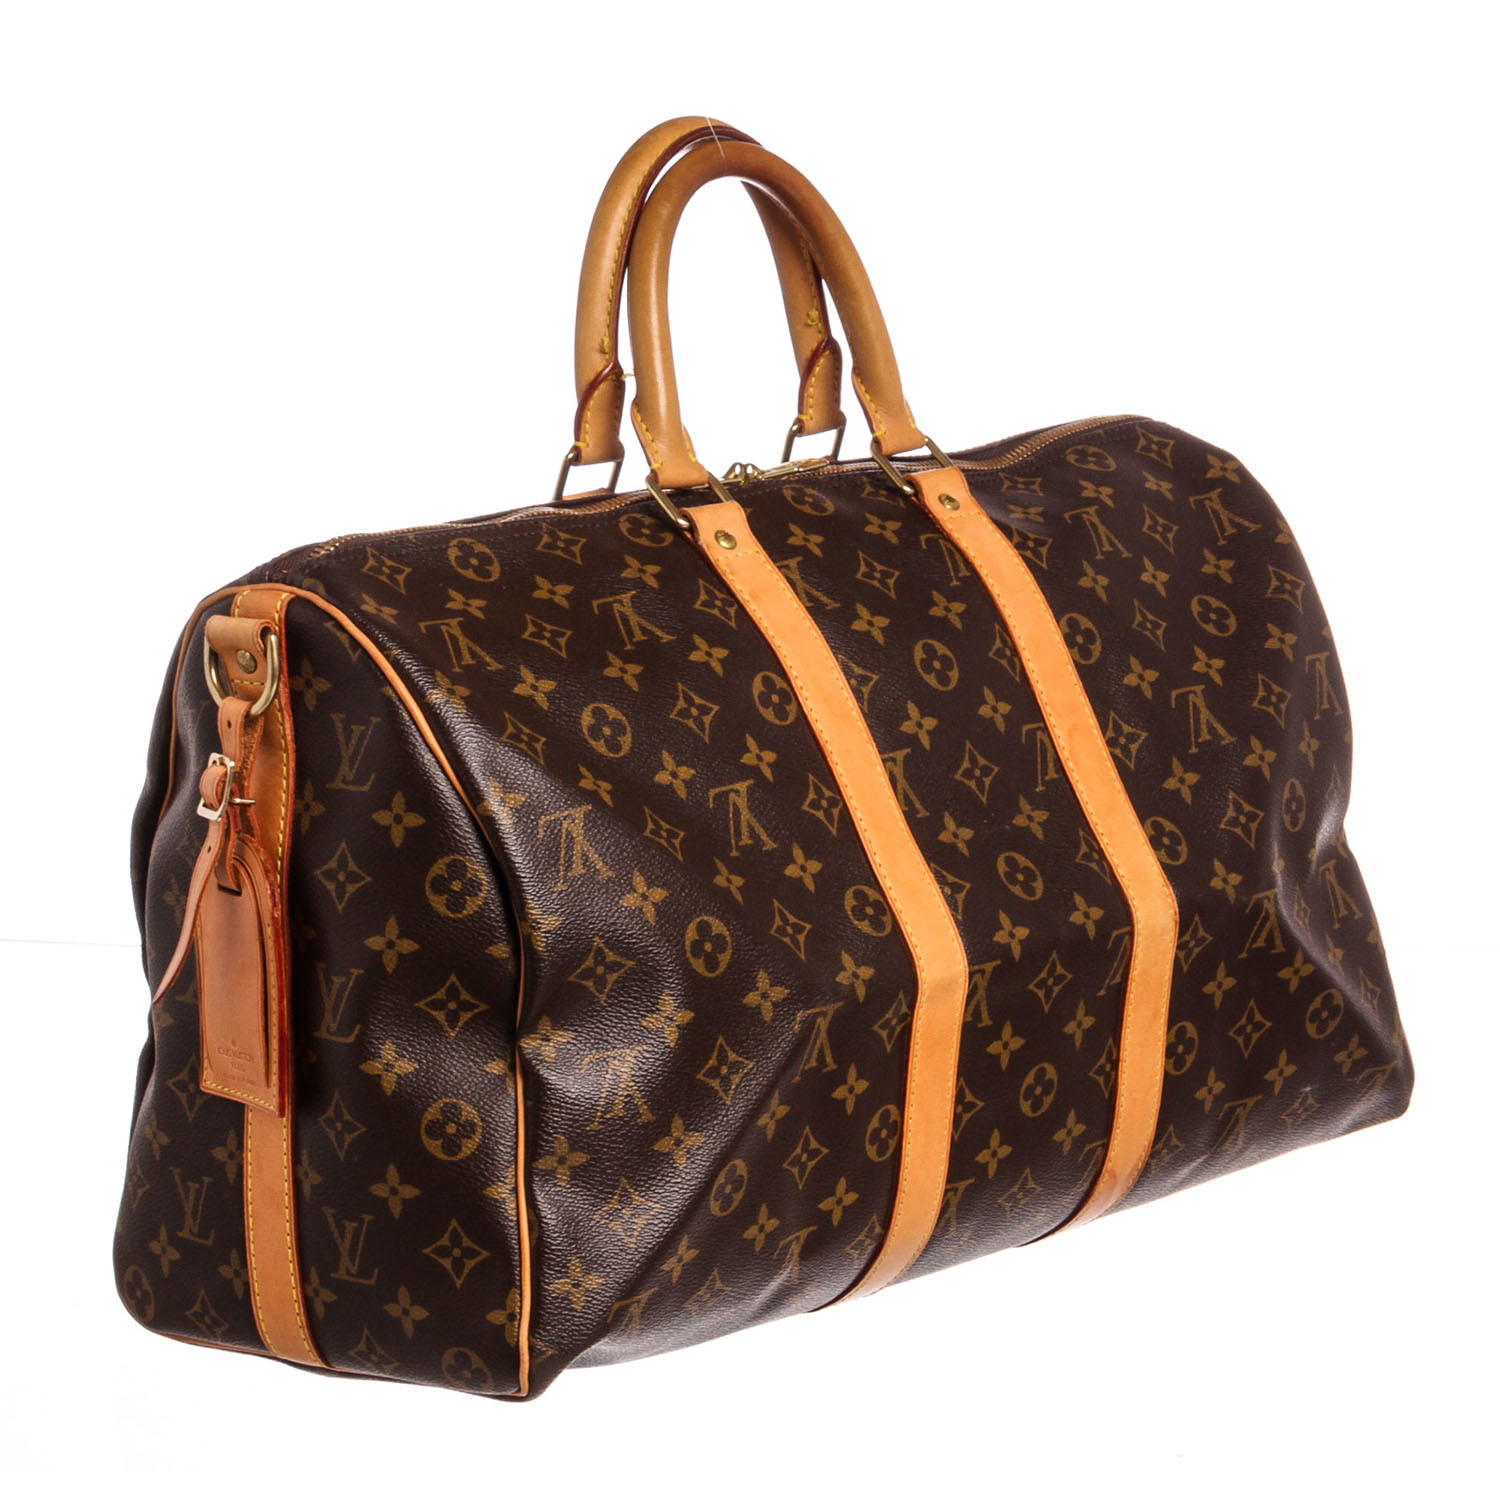 Louis Vuitton Louis Vuitton 45 Keepall Duffle Bag Keweenaw Bay Indian Community